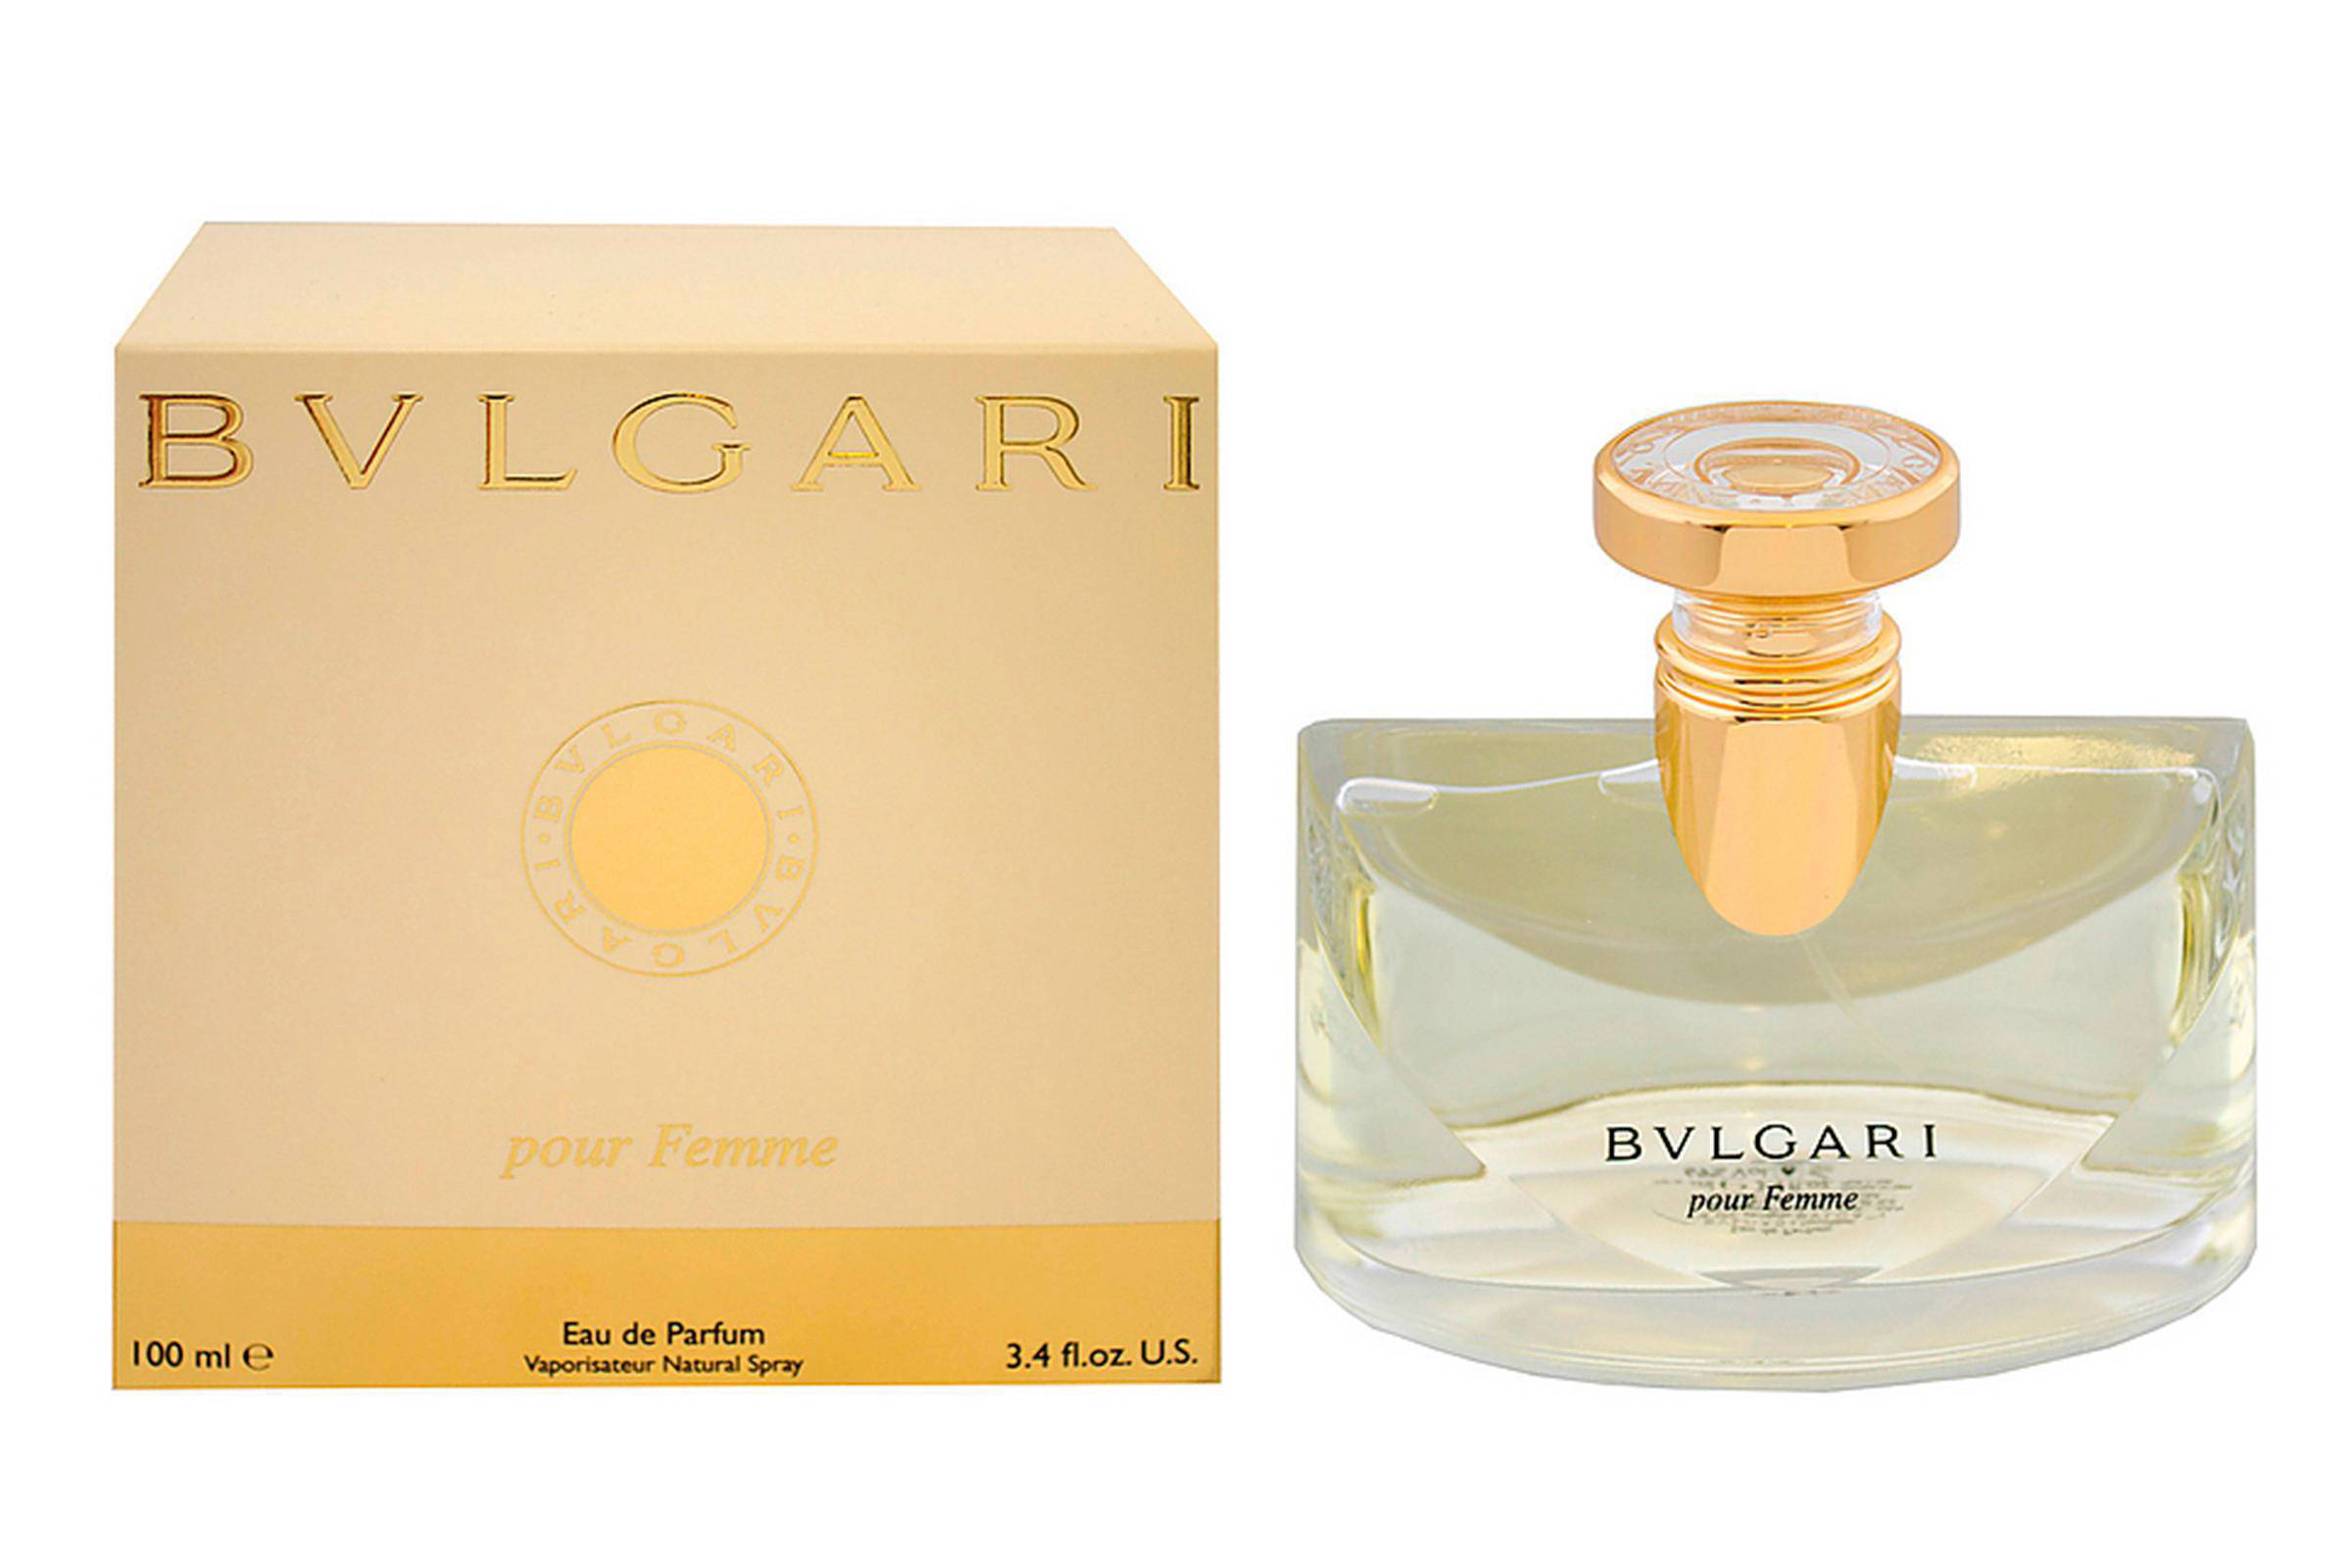 Bvlgari Pour Femme eau de parfum - 100 